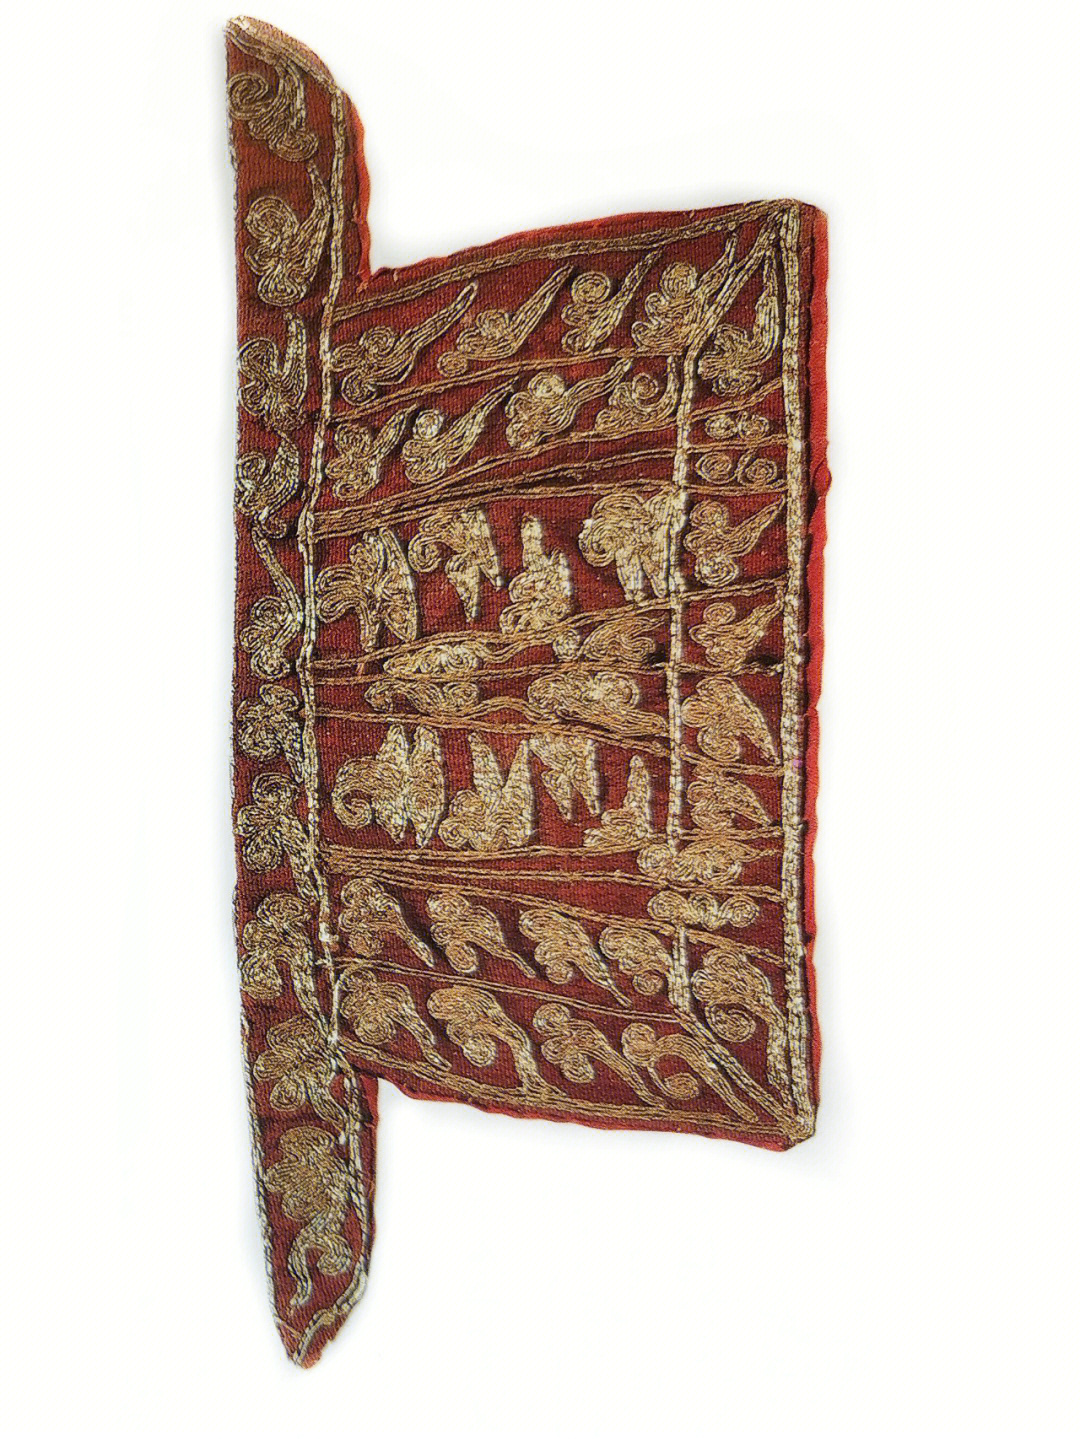 51987年法门寺塔地宫出土现藏法门寺博物馆紫红罗地,红绢衬里